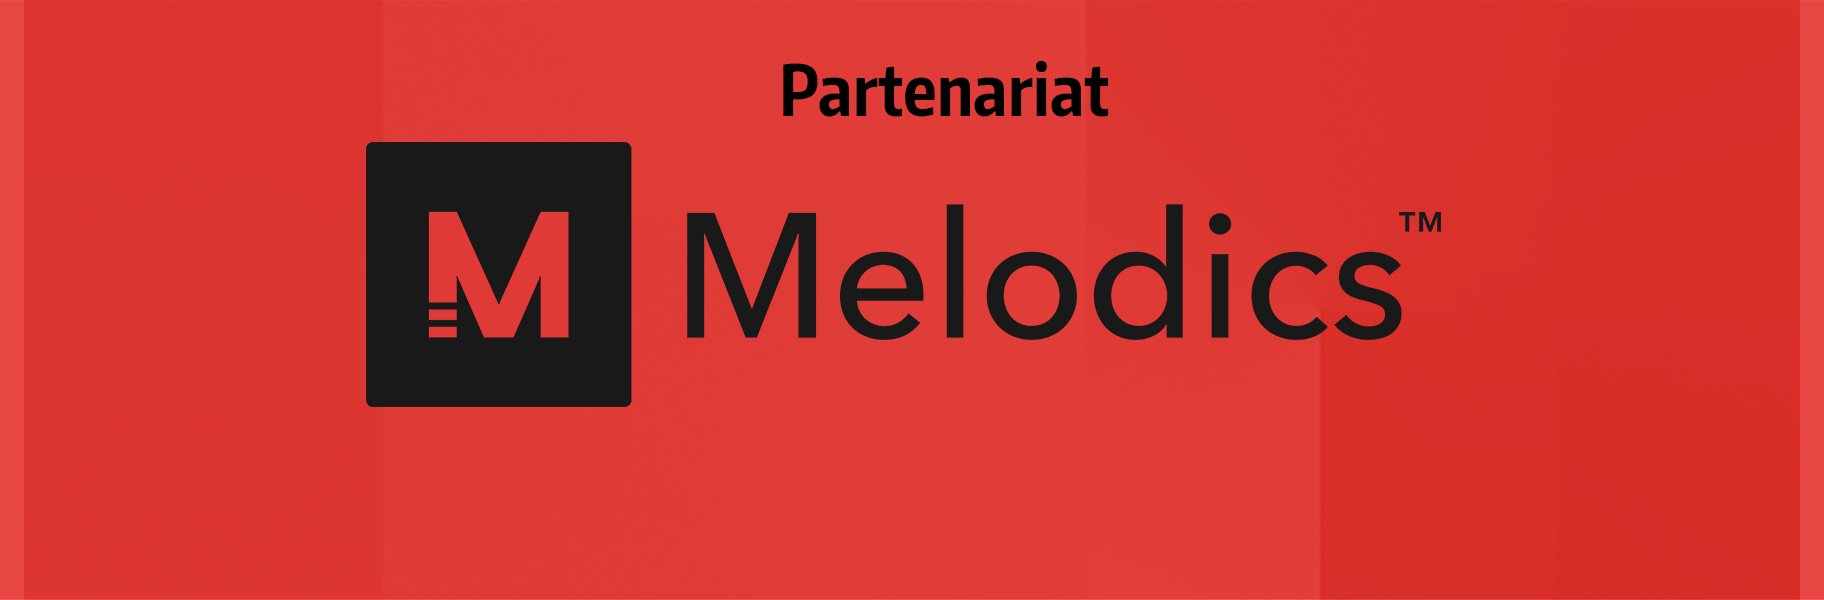 News partenariat-melodics